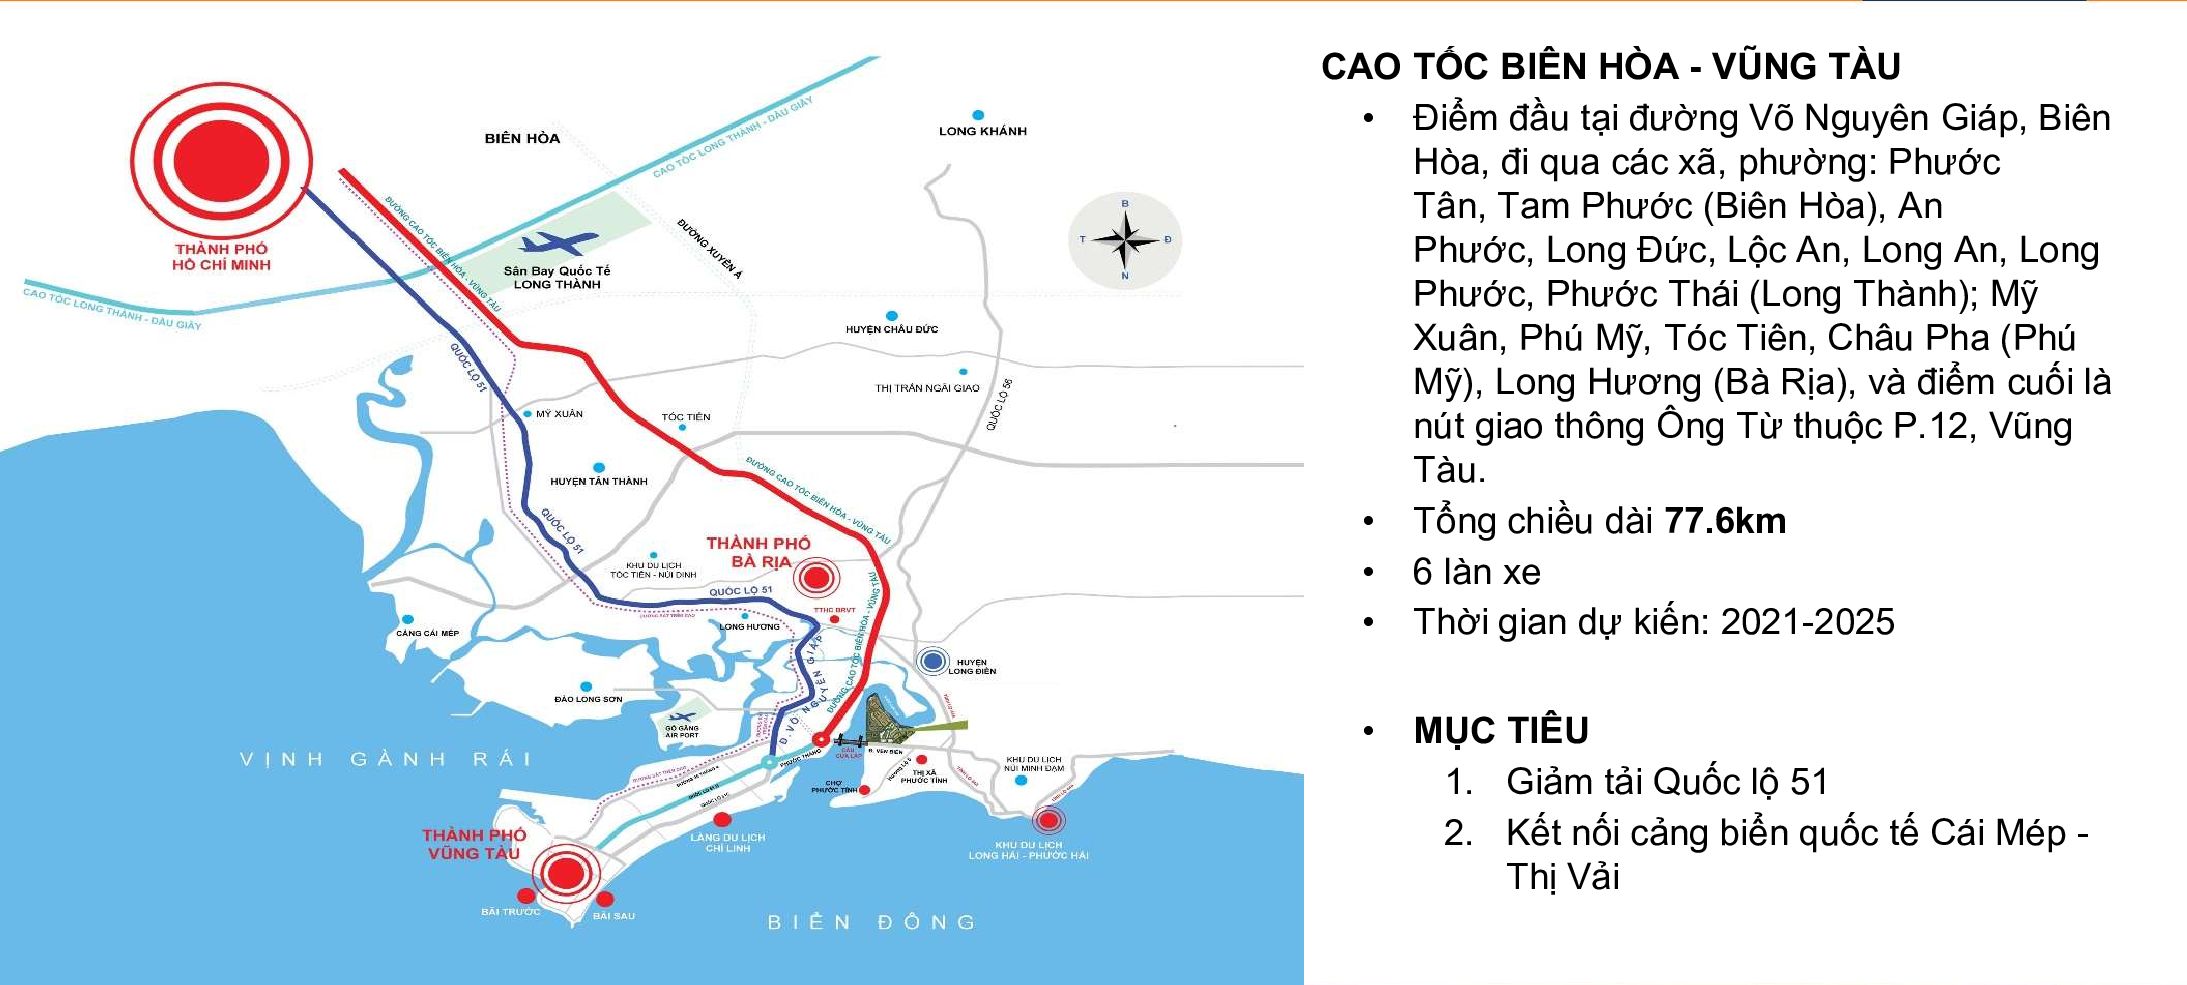 Sơ đồ tuyến Cao tốc Biên Hoà - Vũng Tàu